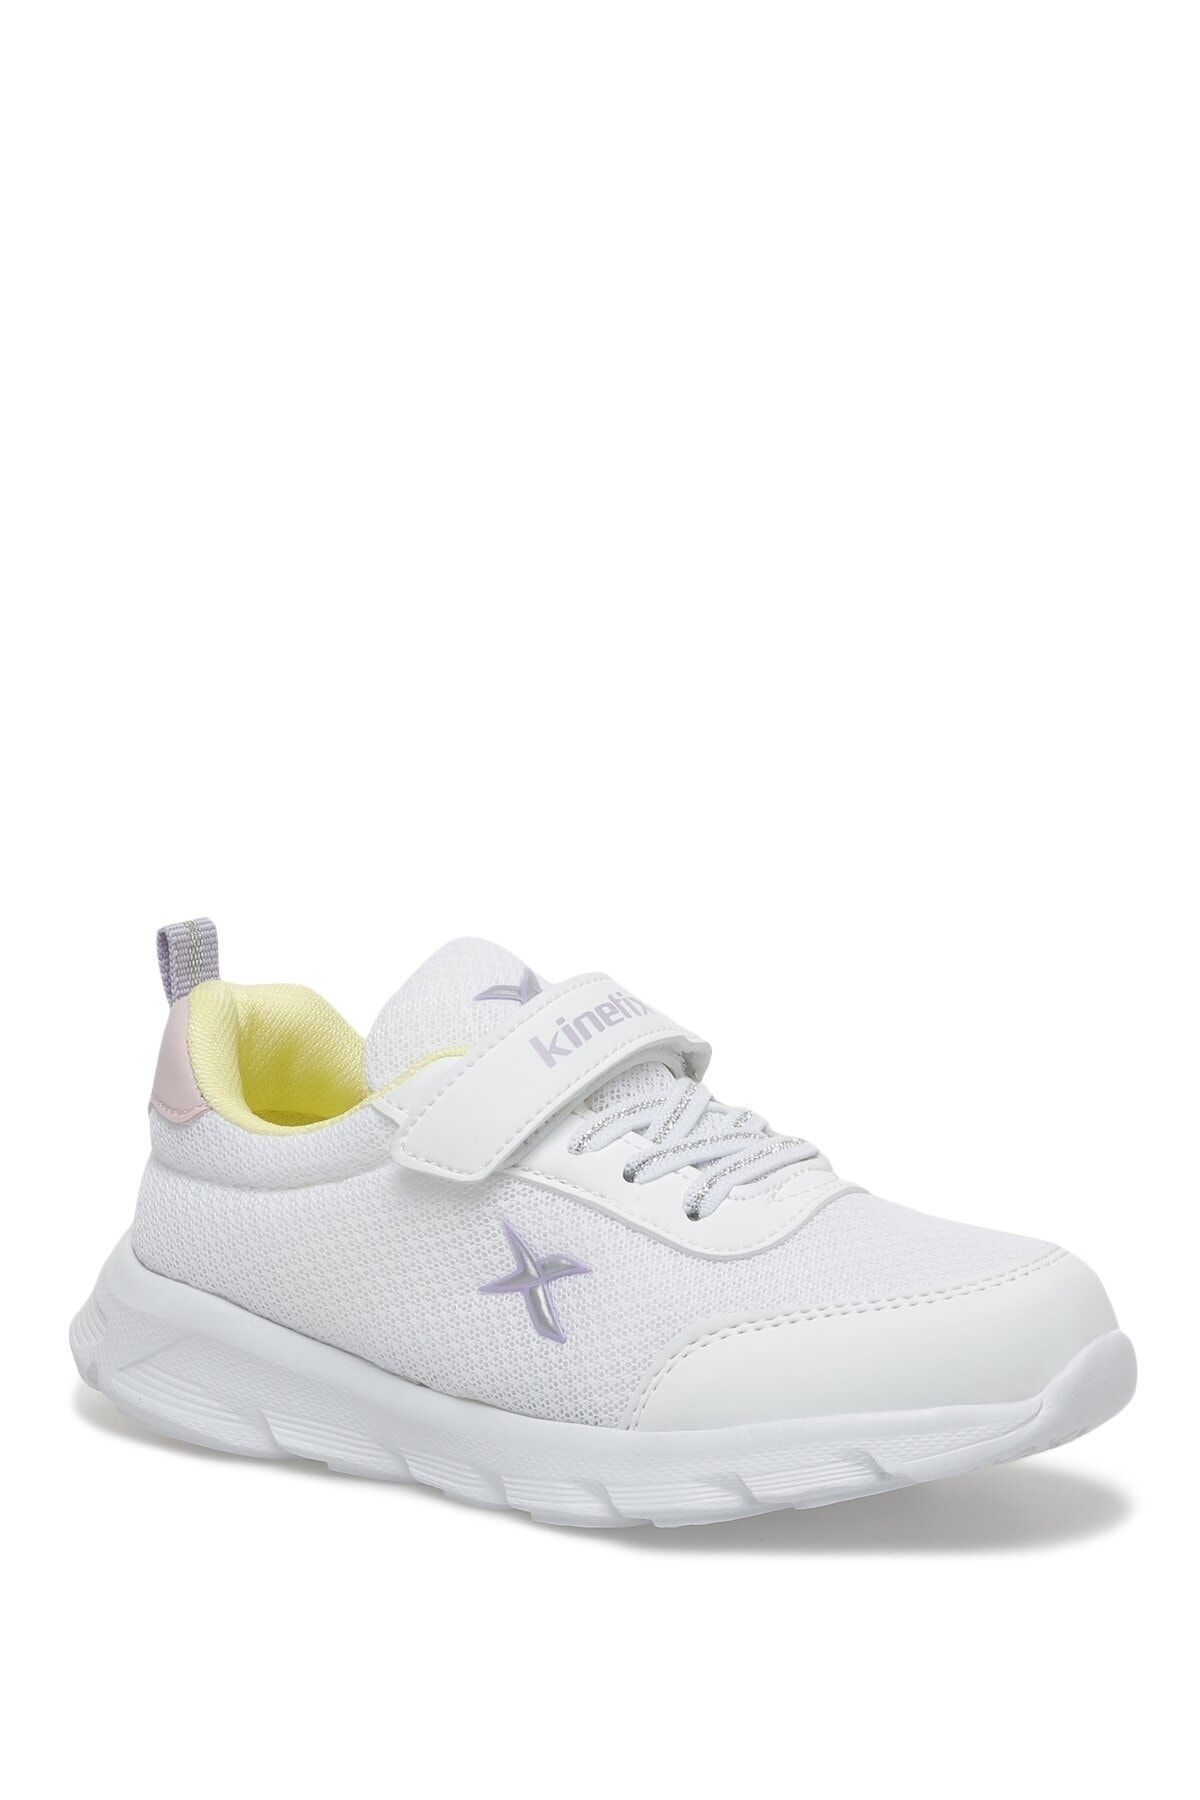 Kinetix 3fx Beyaz Kız Çocuk Spor Ayakkabı